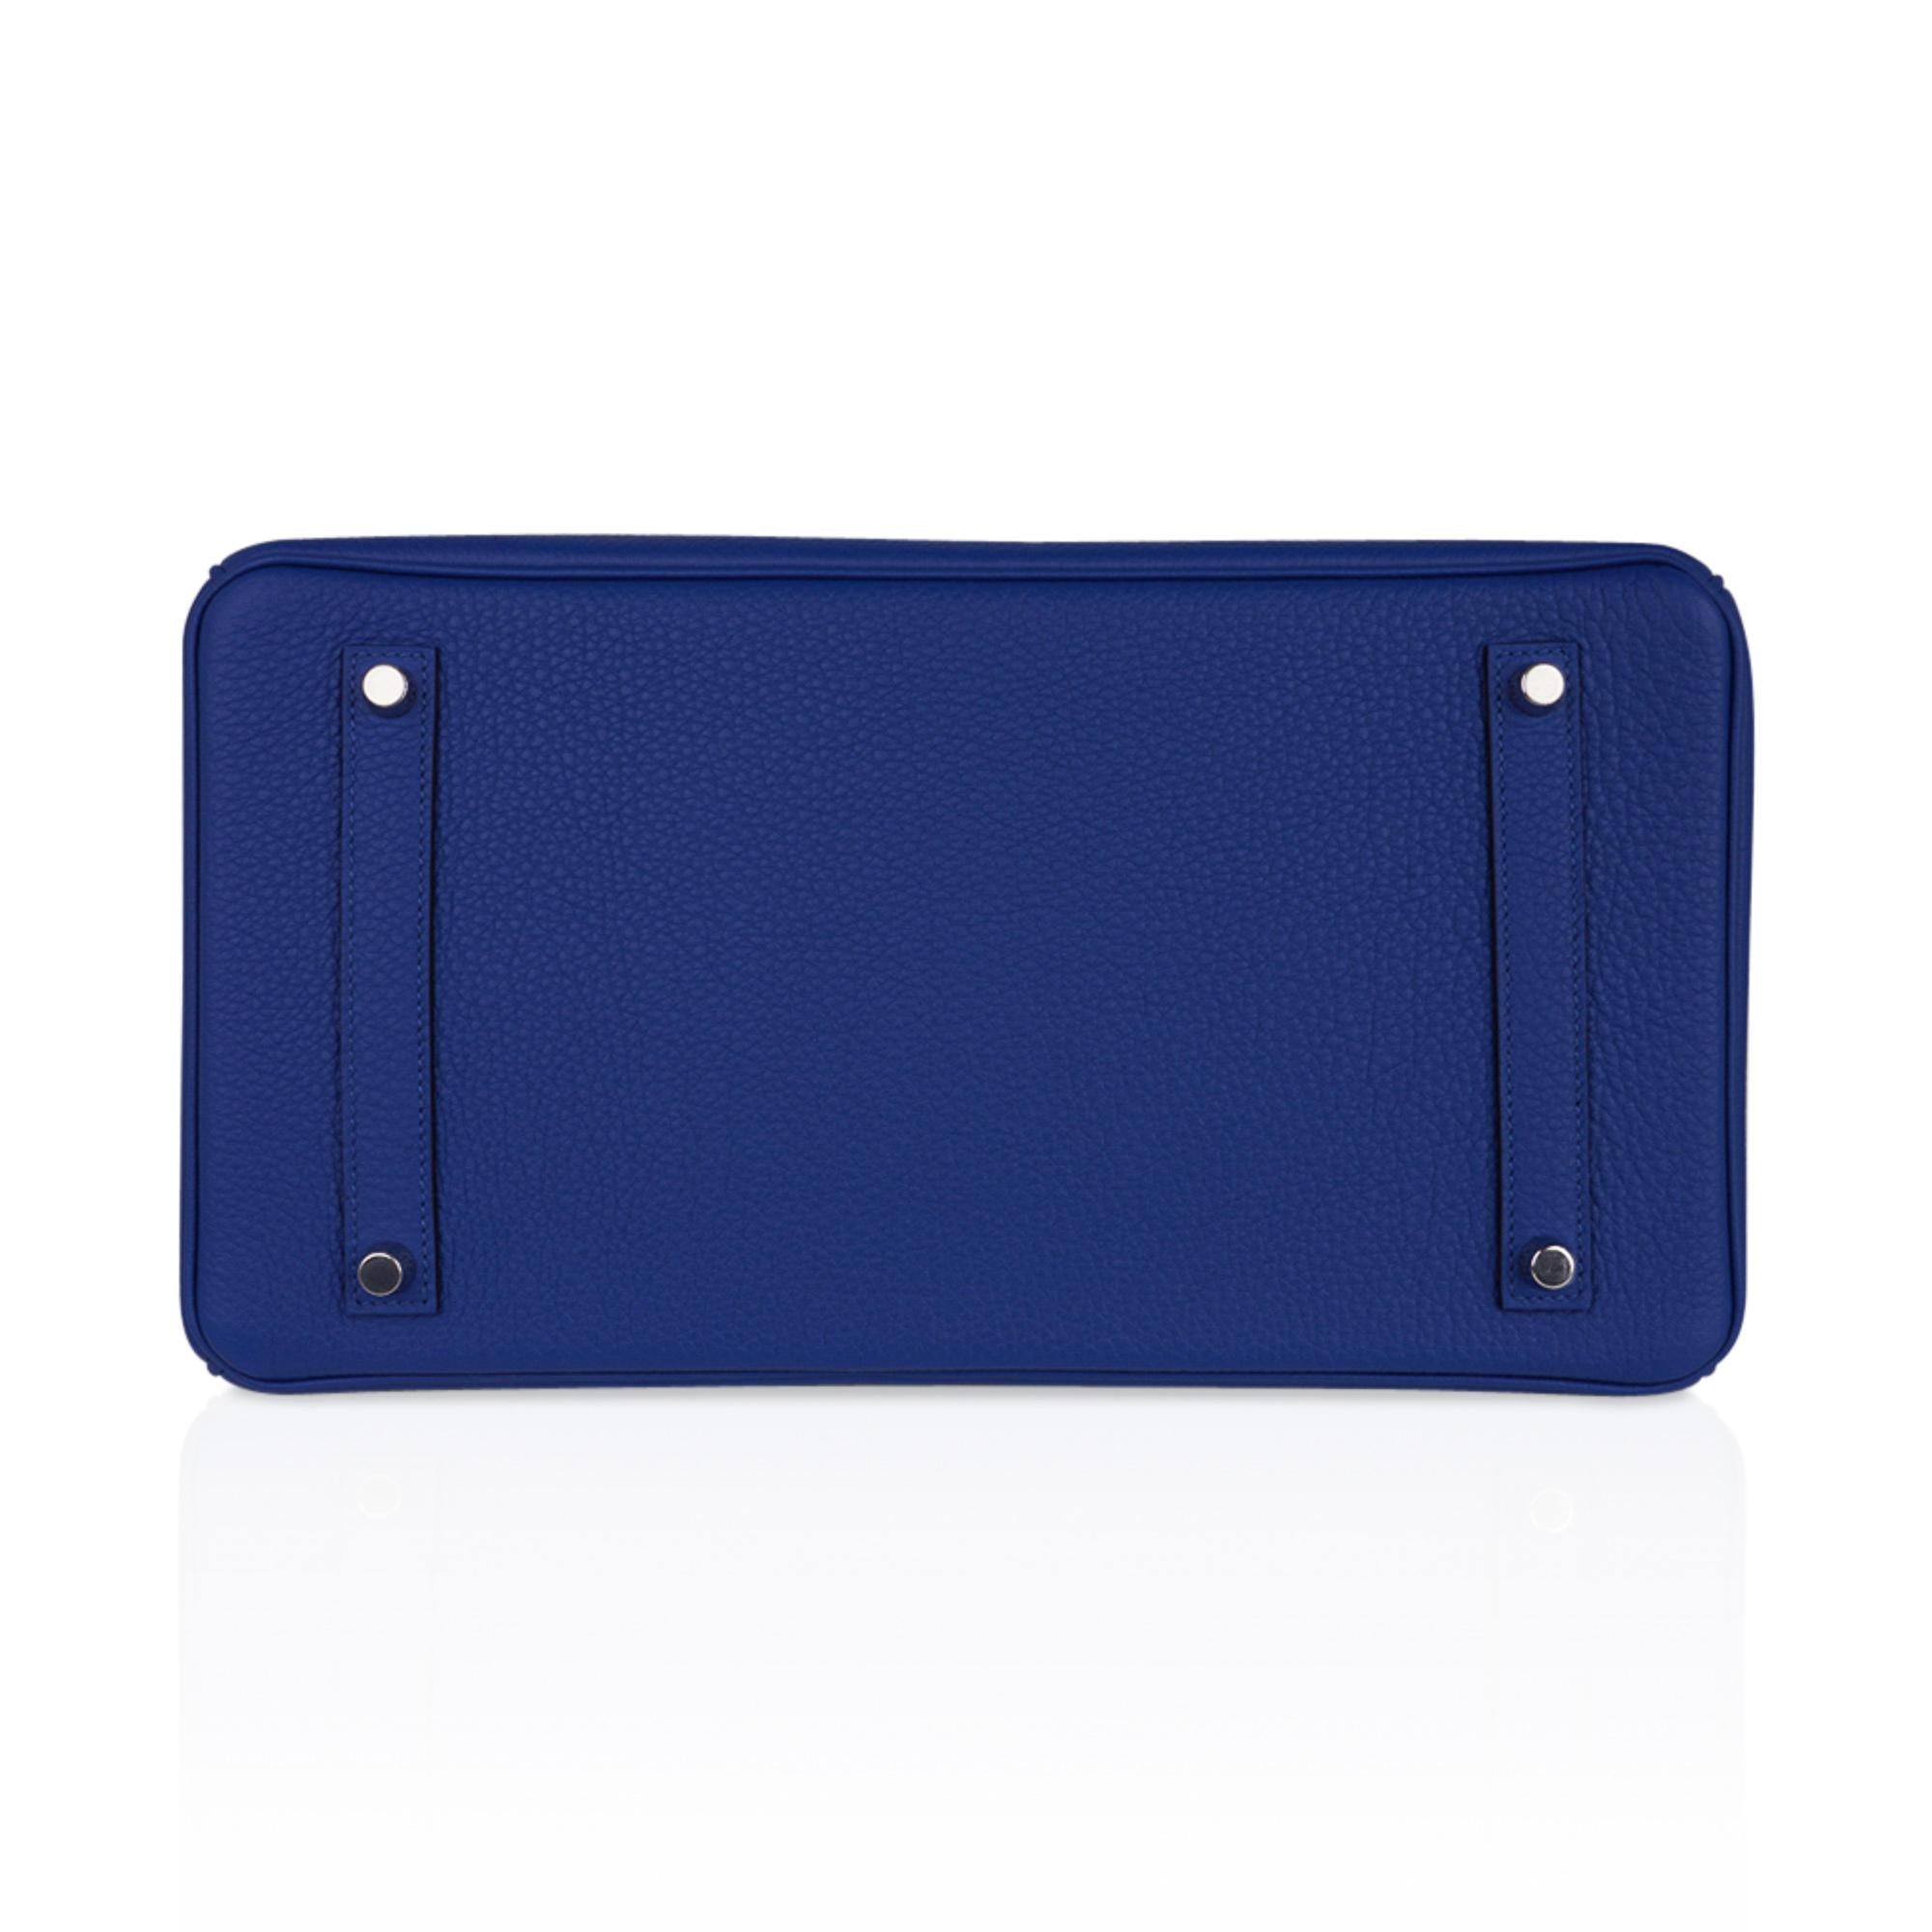 Hermes Birkin 35 Blue de France Bag Palladium Hardware Togo Leather For Sale 2